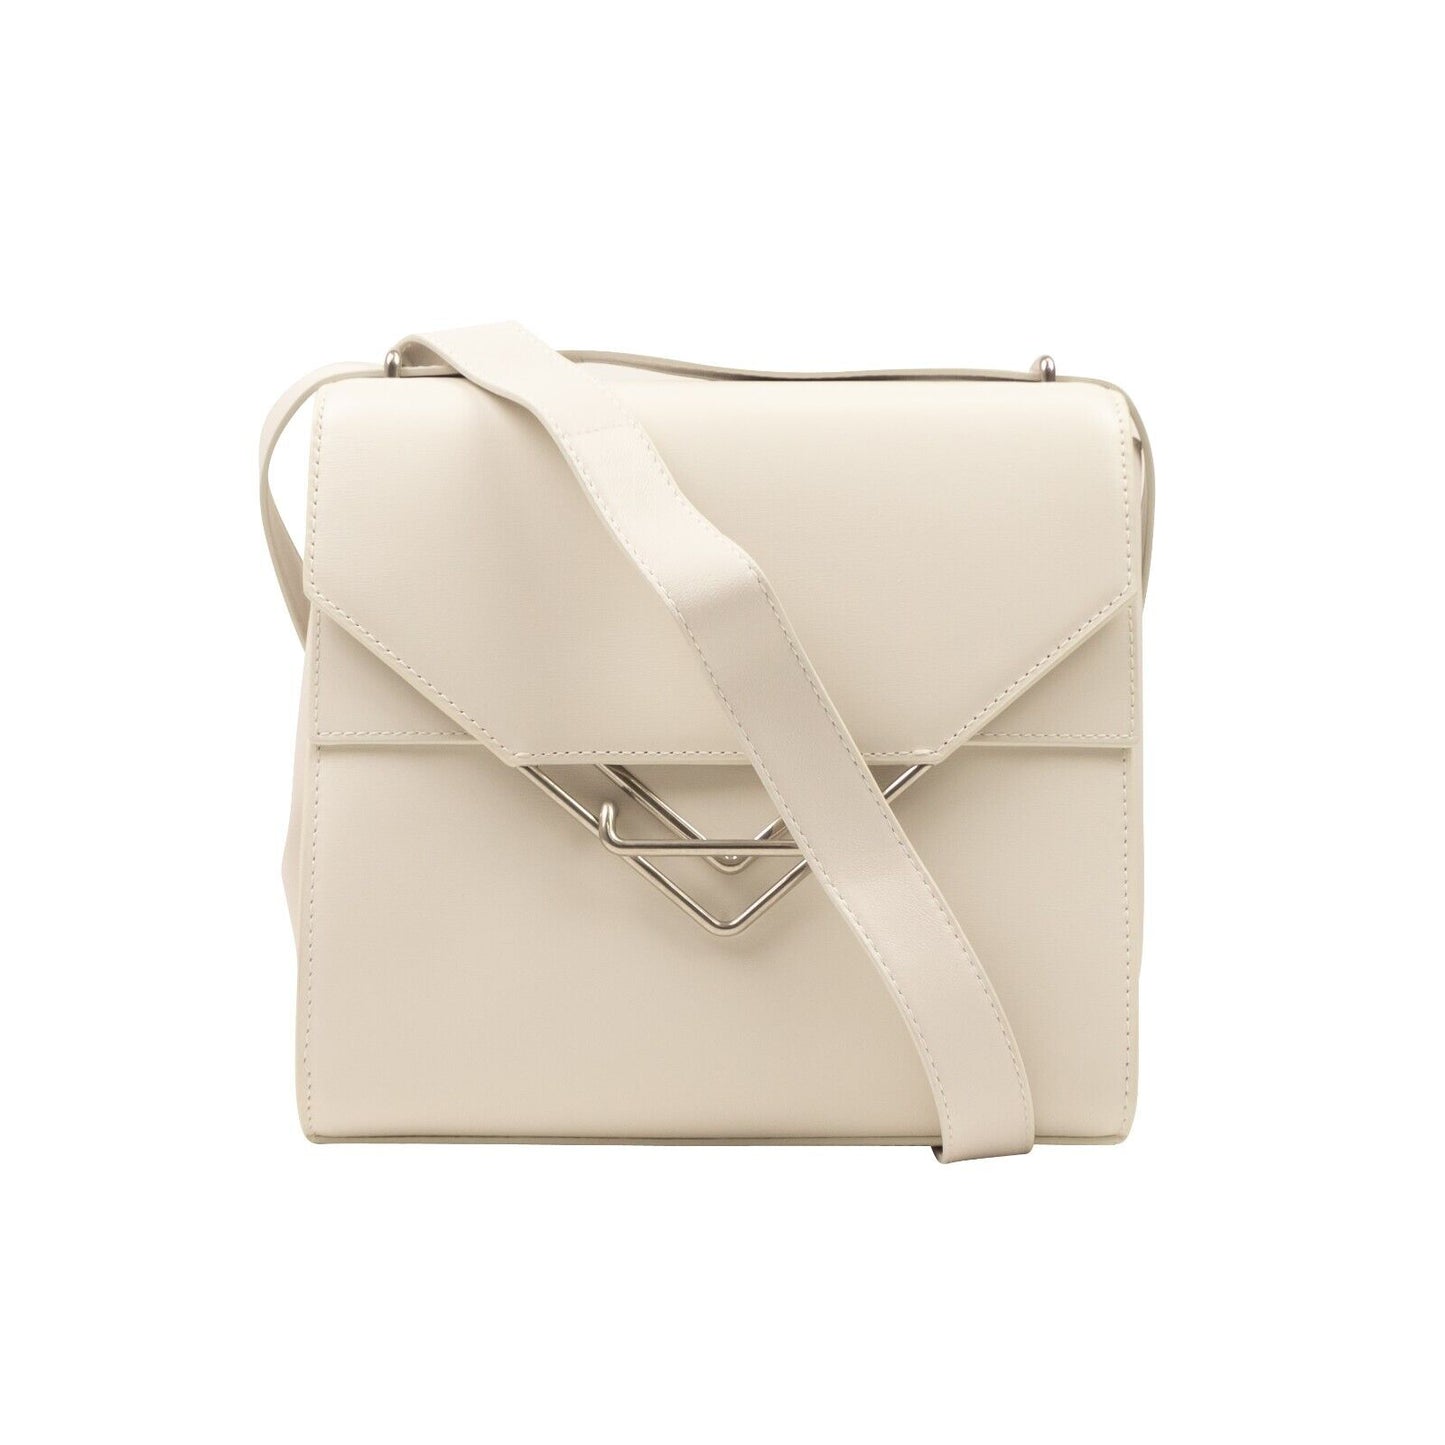 Bottega Veneta Leather Clip Shoulder Bag - Chalk White